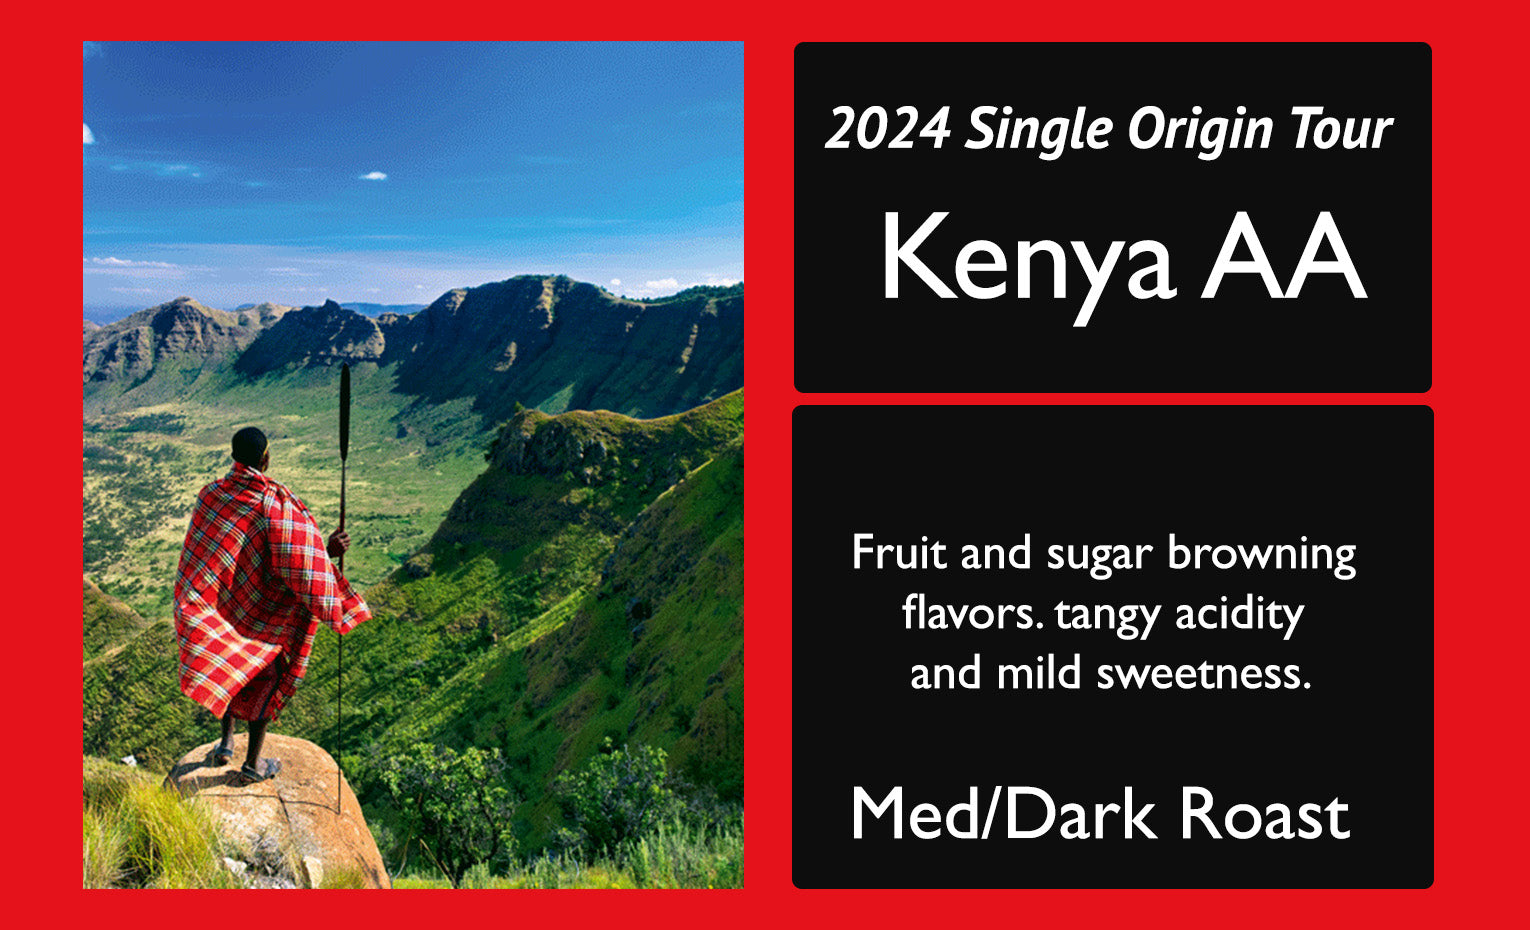 Kenya AA 2024 Single Origin Tour Feature